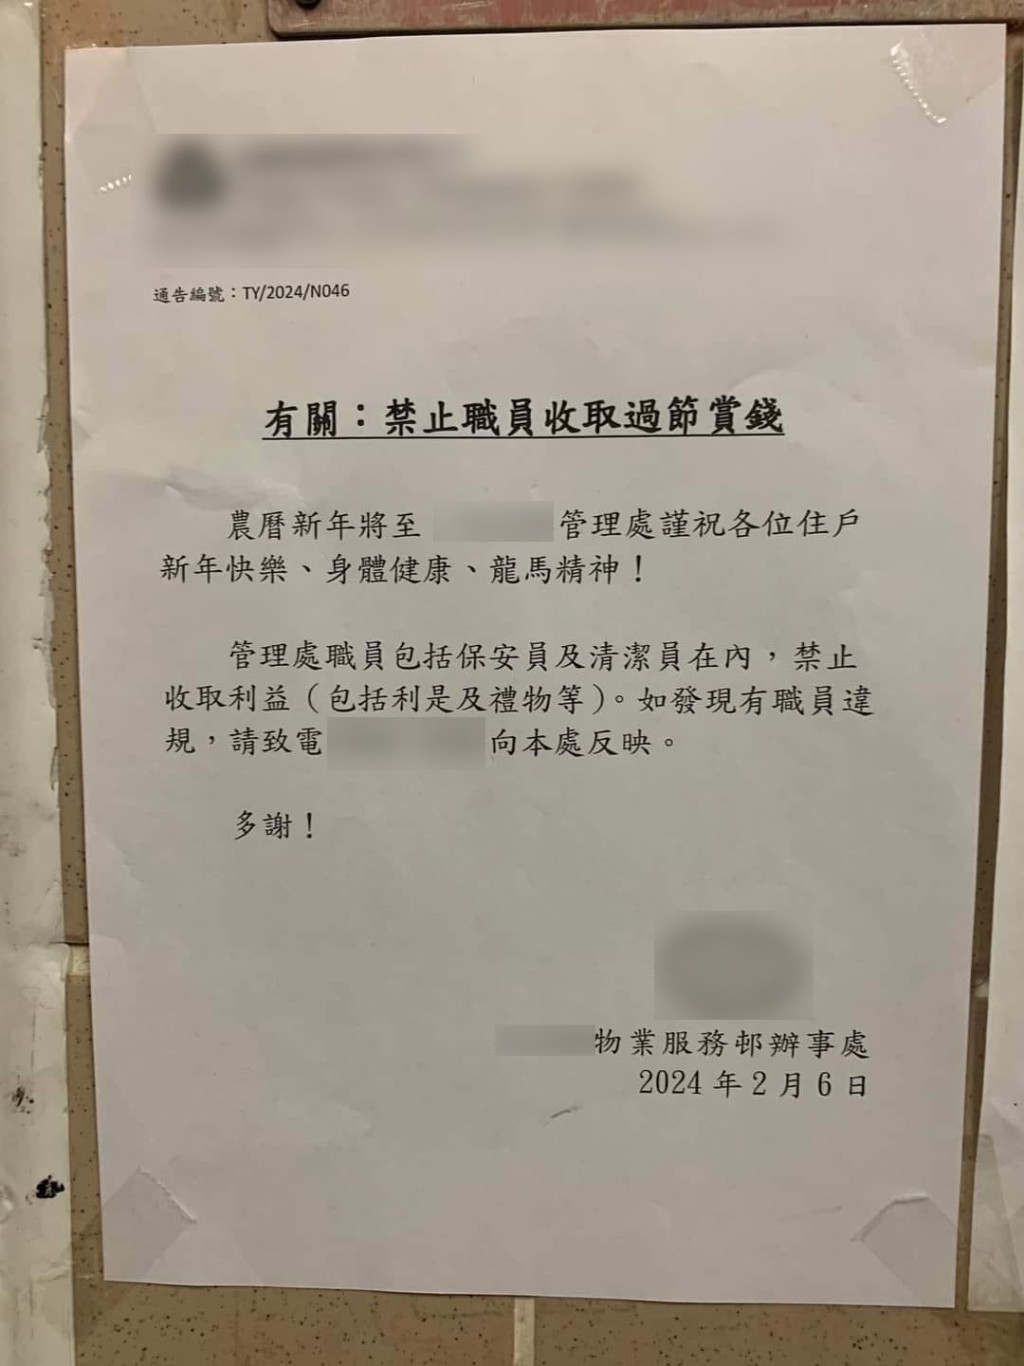 一間物管公司發通告禁止保安及清潔工收取利是及禮物。香港突發事故報料區截圖